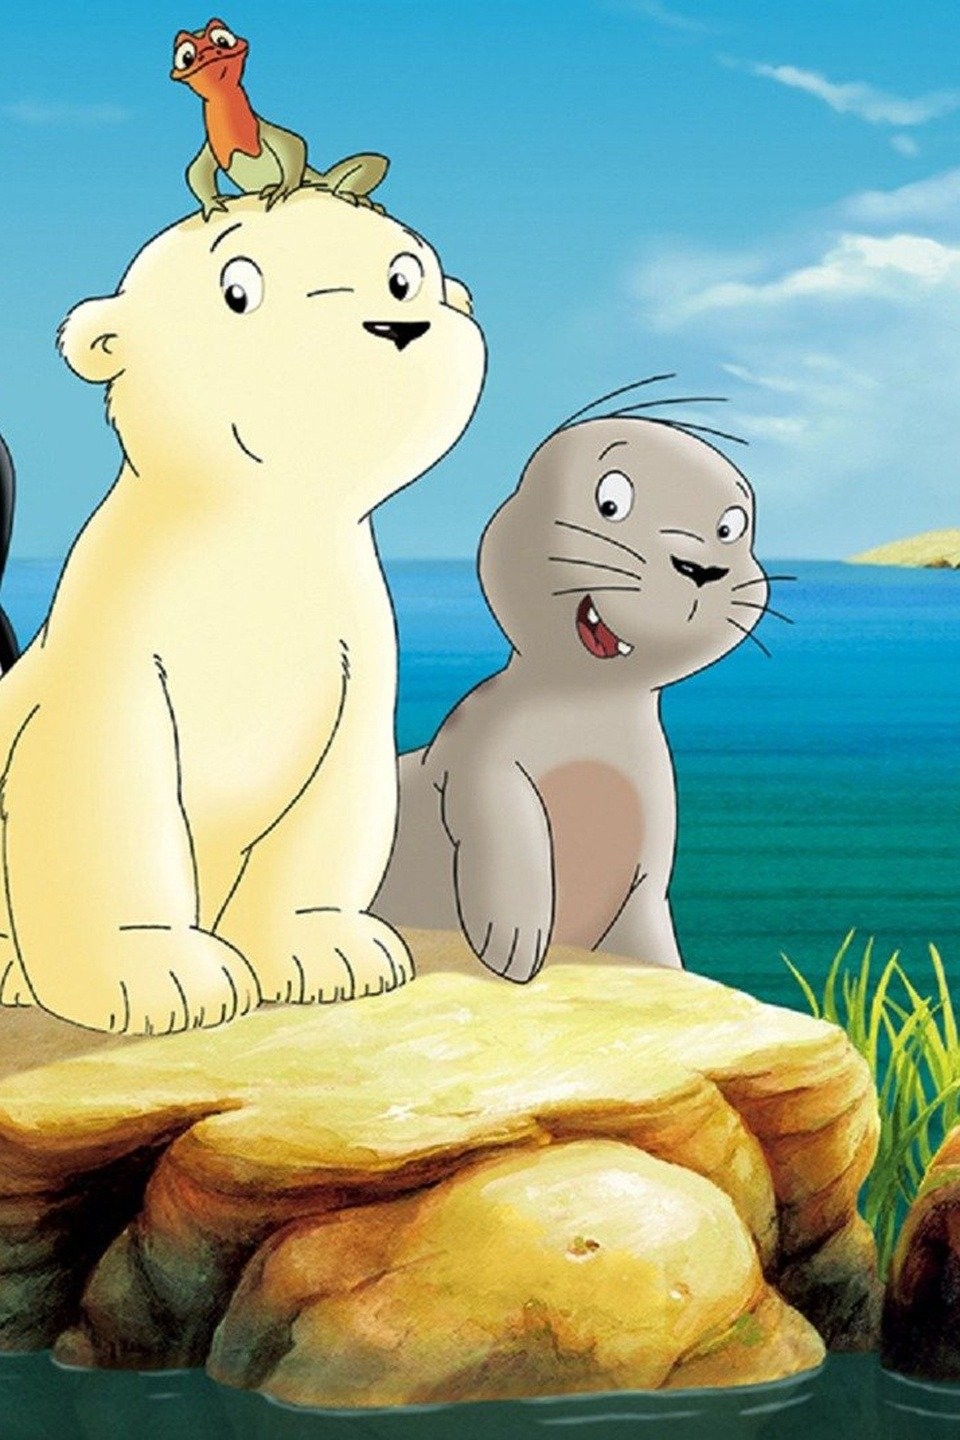 The Little Polar Bear 2: The Mysterious Island (2005) - IMDb